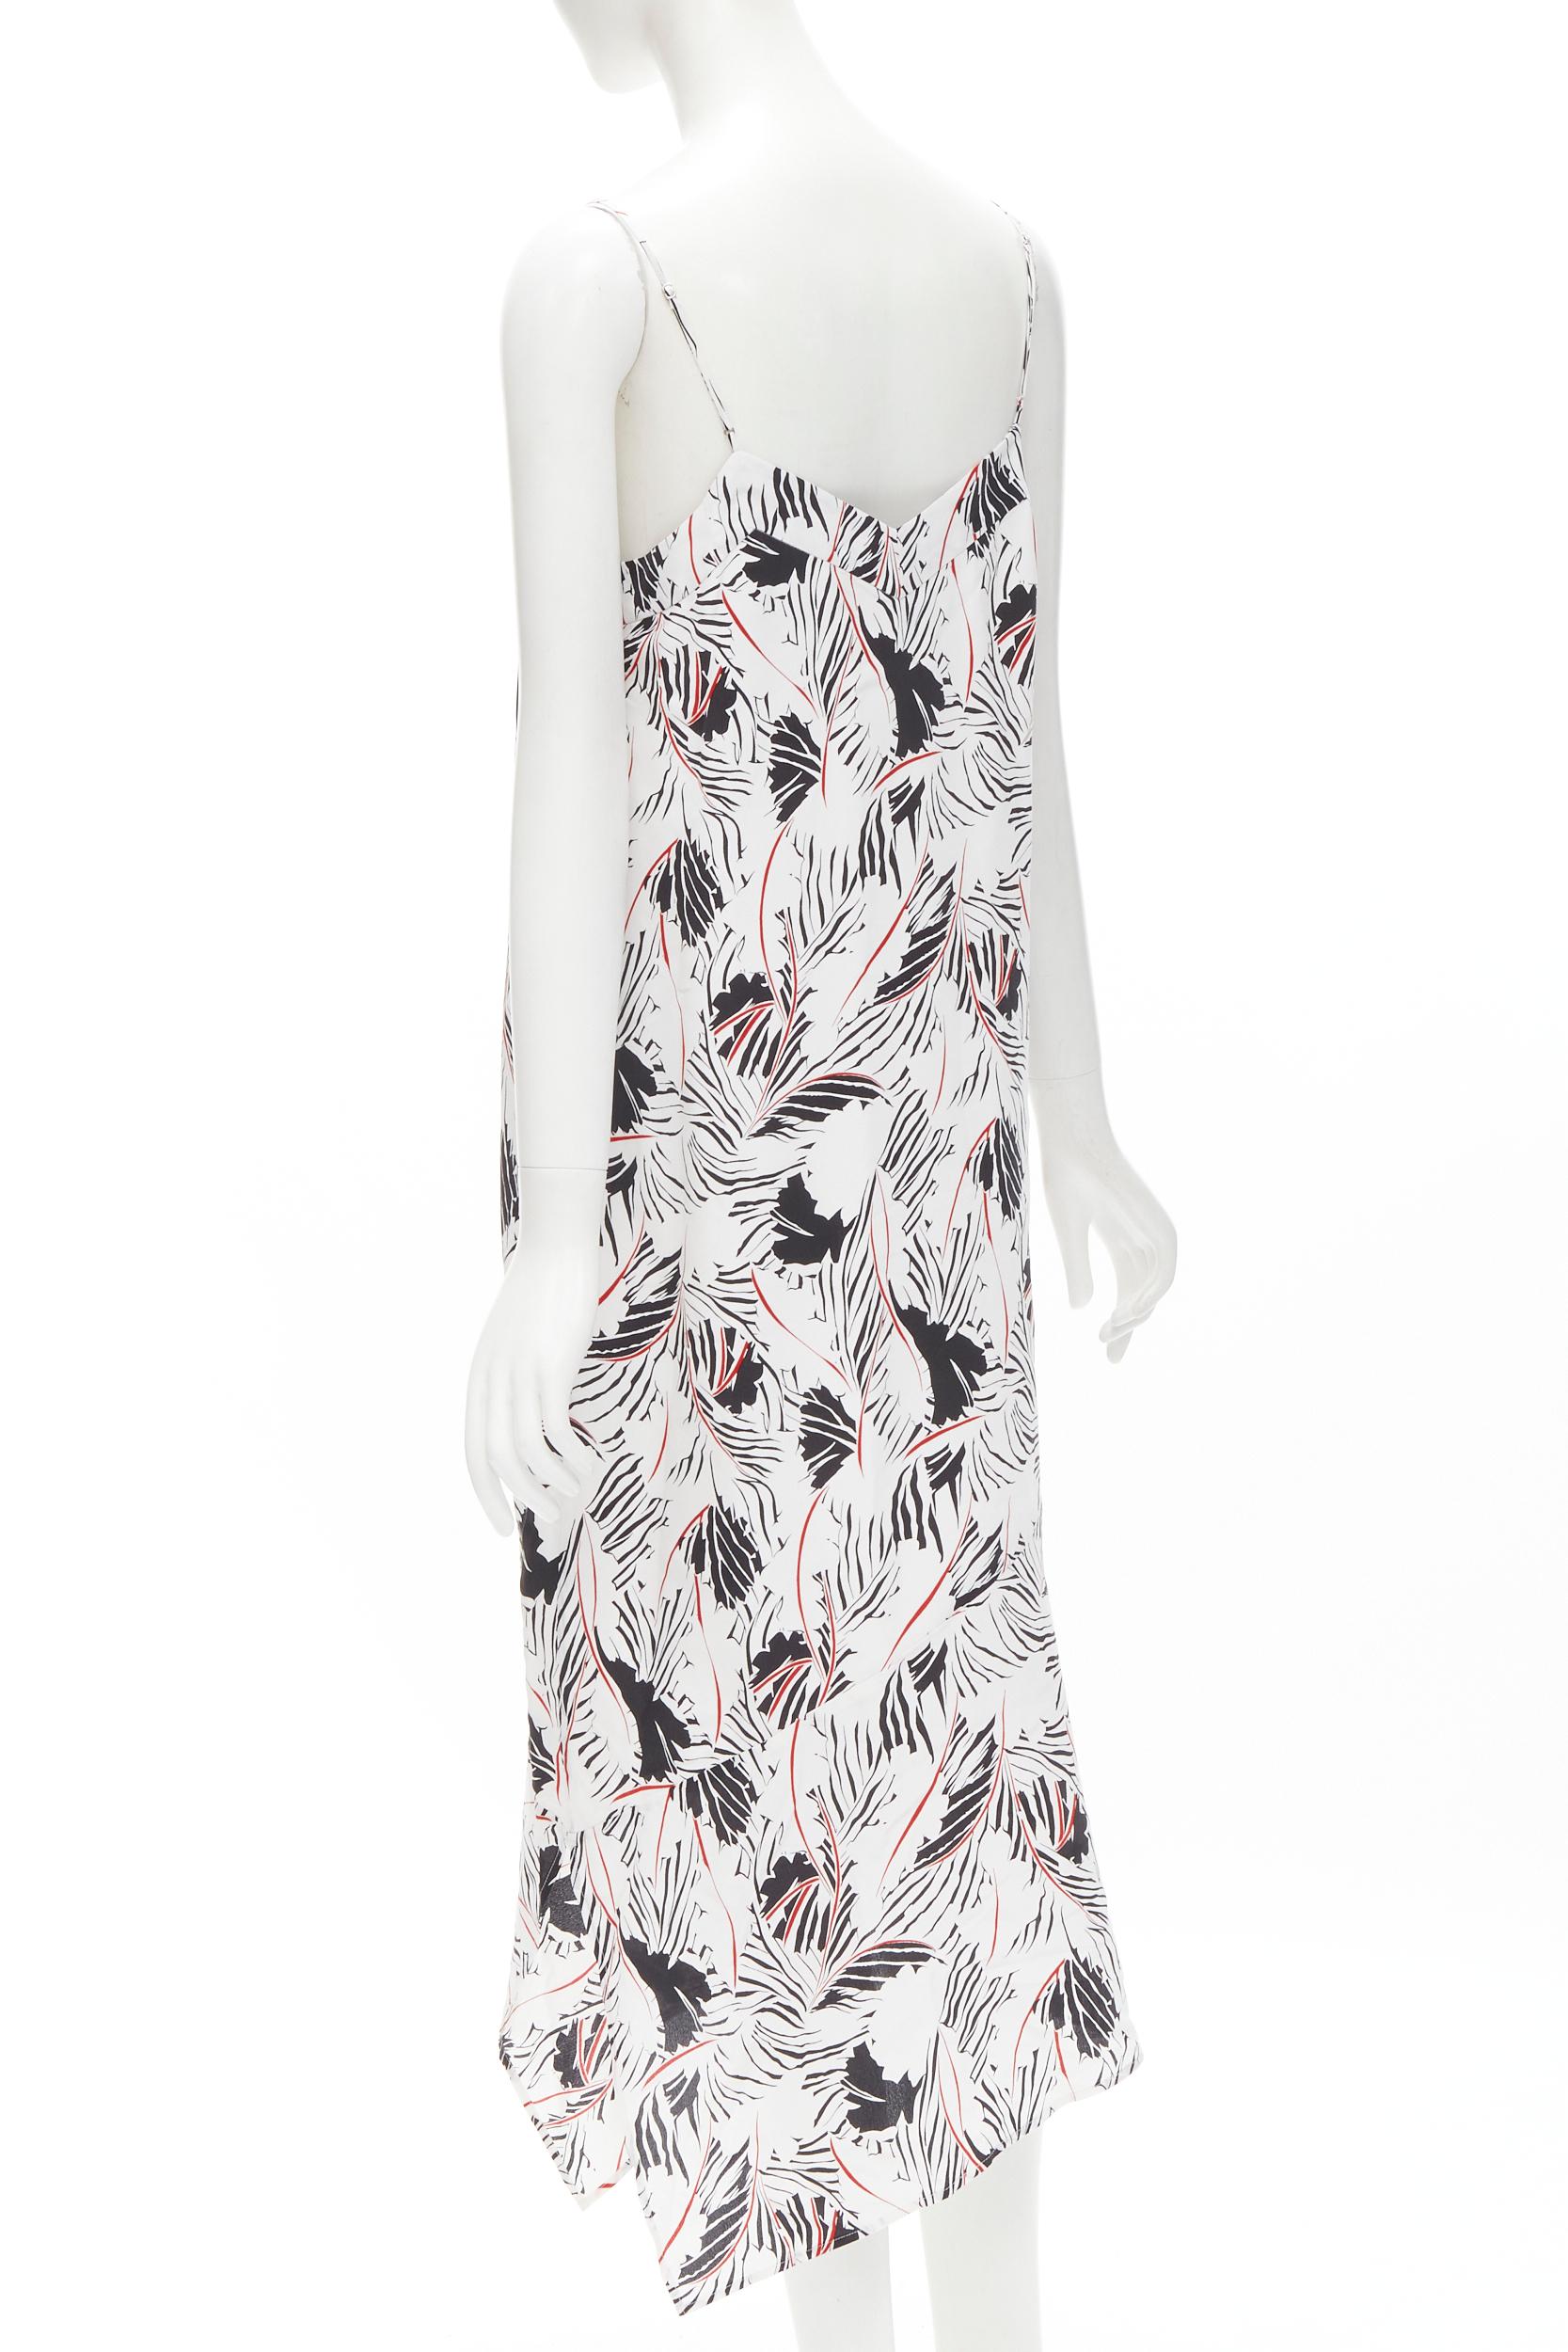 Gray EQUIPMENT FEMME 100% silk white black red graphic print asymmetric slip dress S For Sale